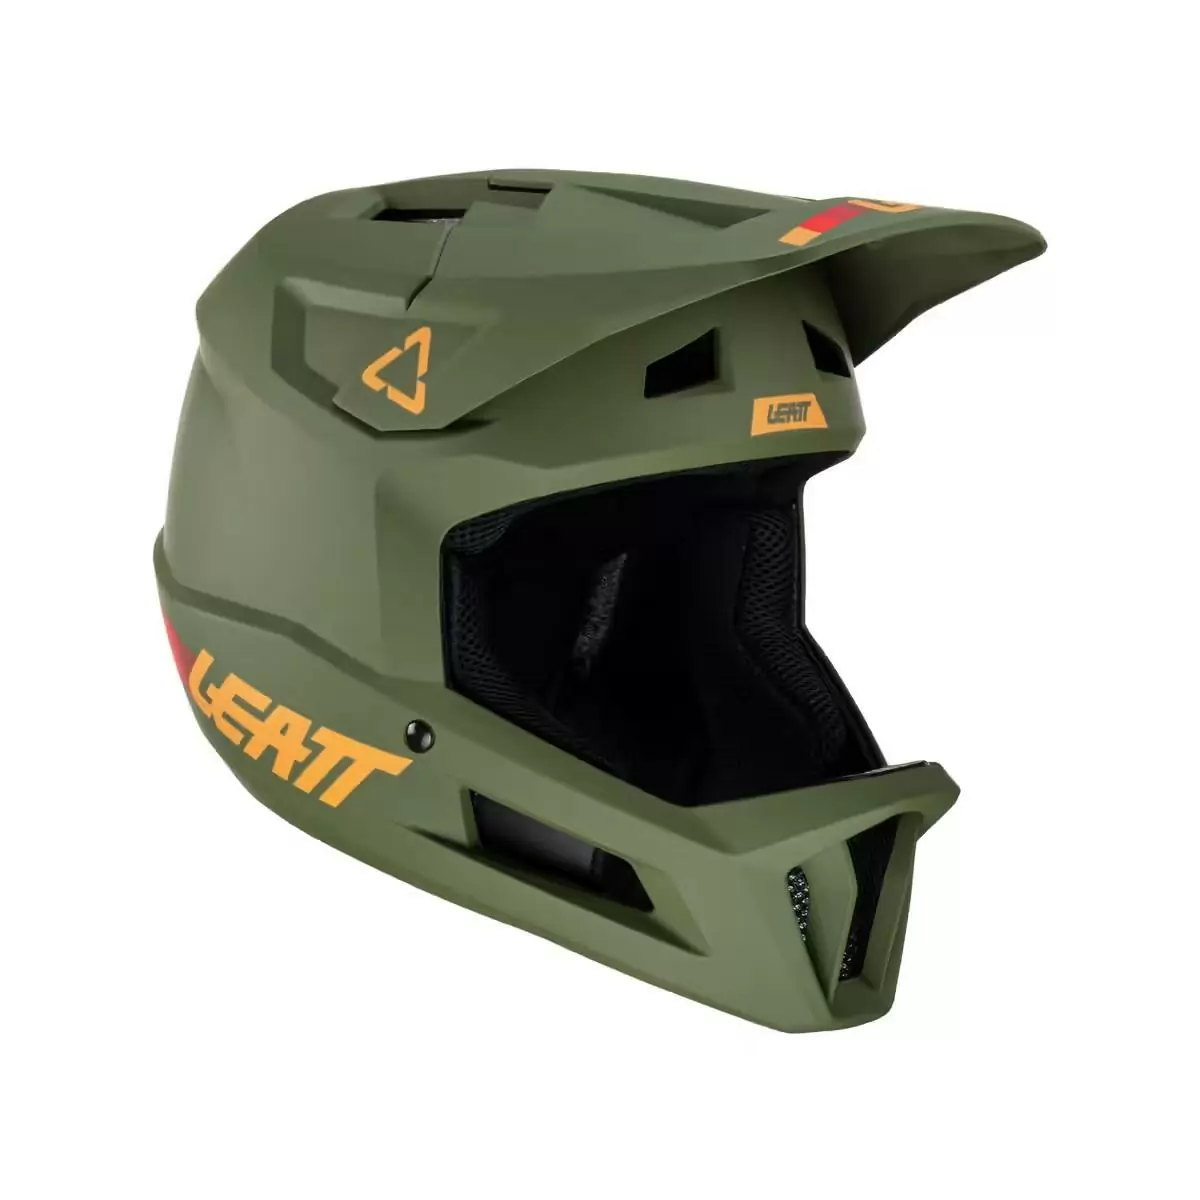 Gravity 1.0 MTB Fullface Helmet Green Pine Size M (57-58cm) #3